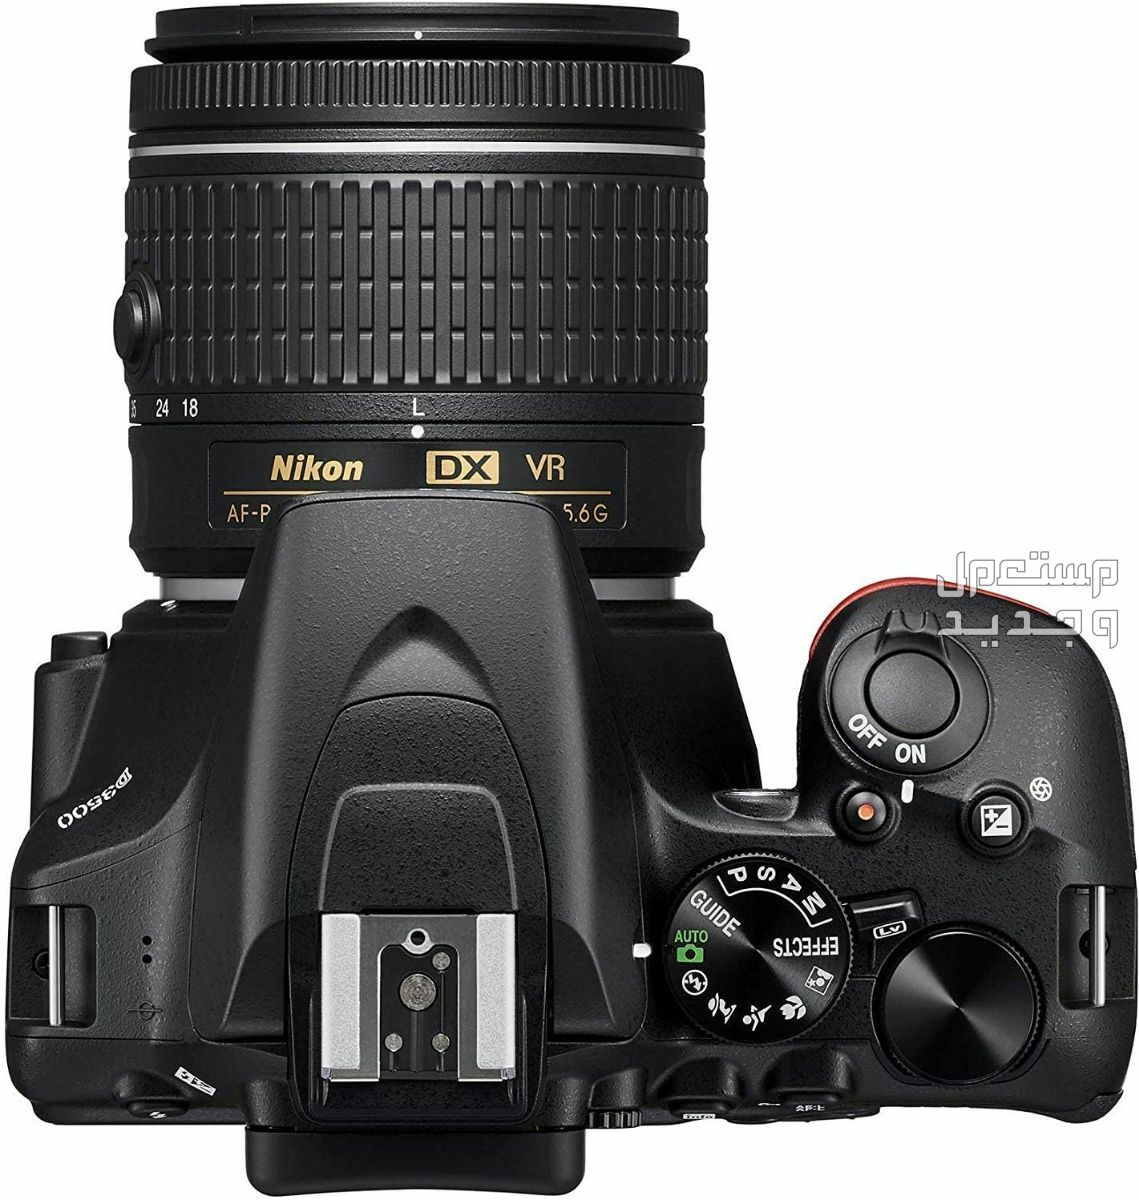 10 كاميرات تصوير ماركات عالمية بأسعار رخيصة في الأردن سعر كاميرا Nikon D3500